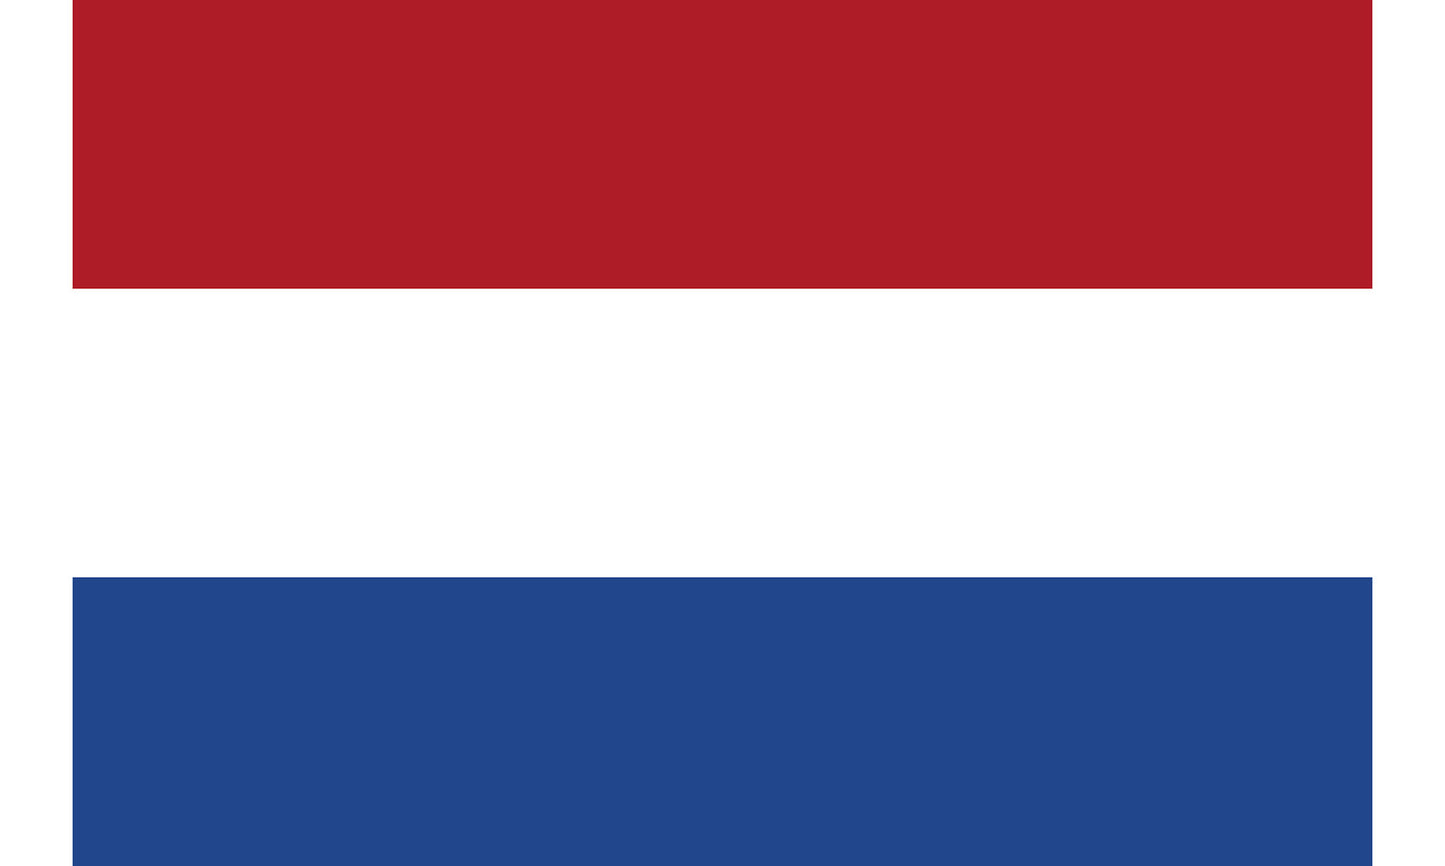 INR-NTL-15x22-2 - государственный флаг Нидерландов, размер: 15х22 см, материал: атлас. Печать с двух сторон. Подставка и шток приобретаются отдельно